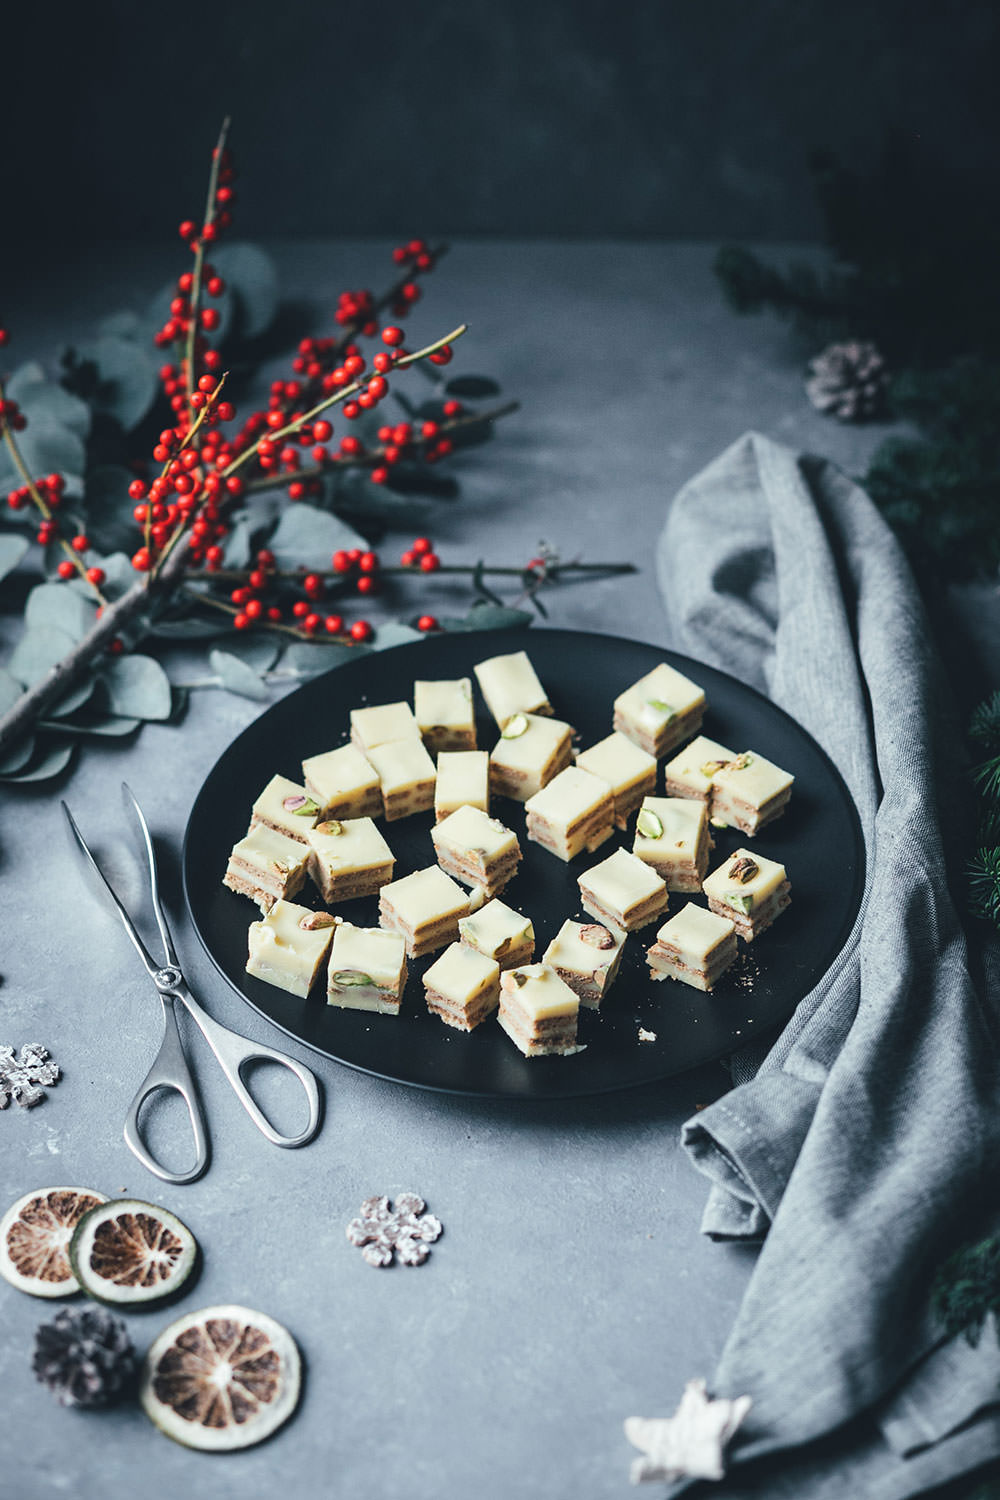 Weihnachtlicher Kalter Hund mit weißer Schokolade, Spekulatius und Pistazien | Geschenke aus der Küche für die Weihnachtszeit und den Plätzchenteller | moeyskitchen.com #kalterhund #kekskuchen #kalteschnauze #spekulatius #weisseschokolade #weihnachtsplätzchen #rezepte #foodblogger #weihnachten